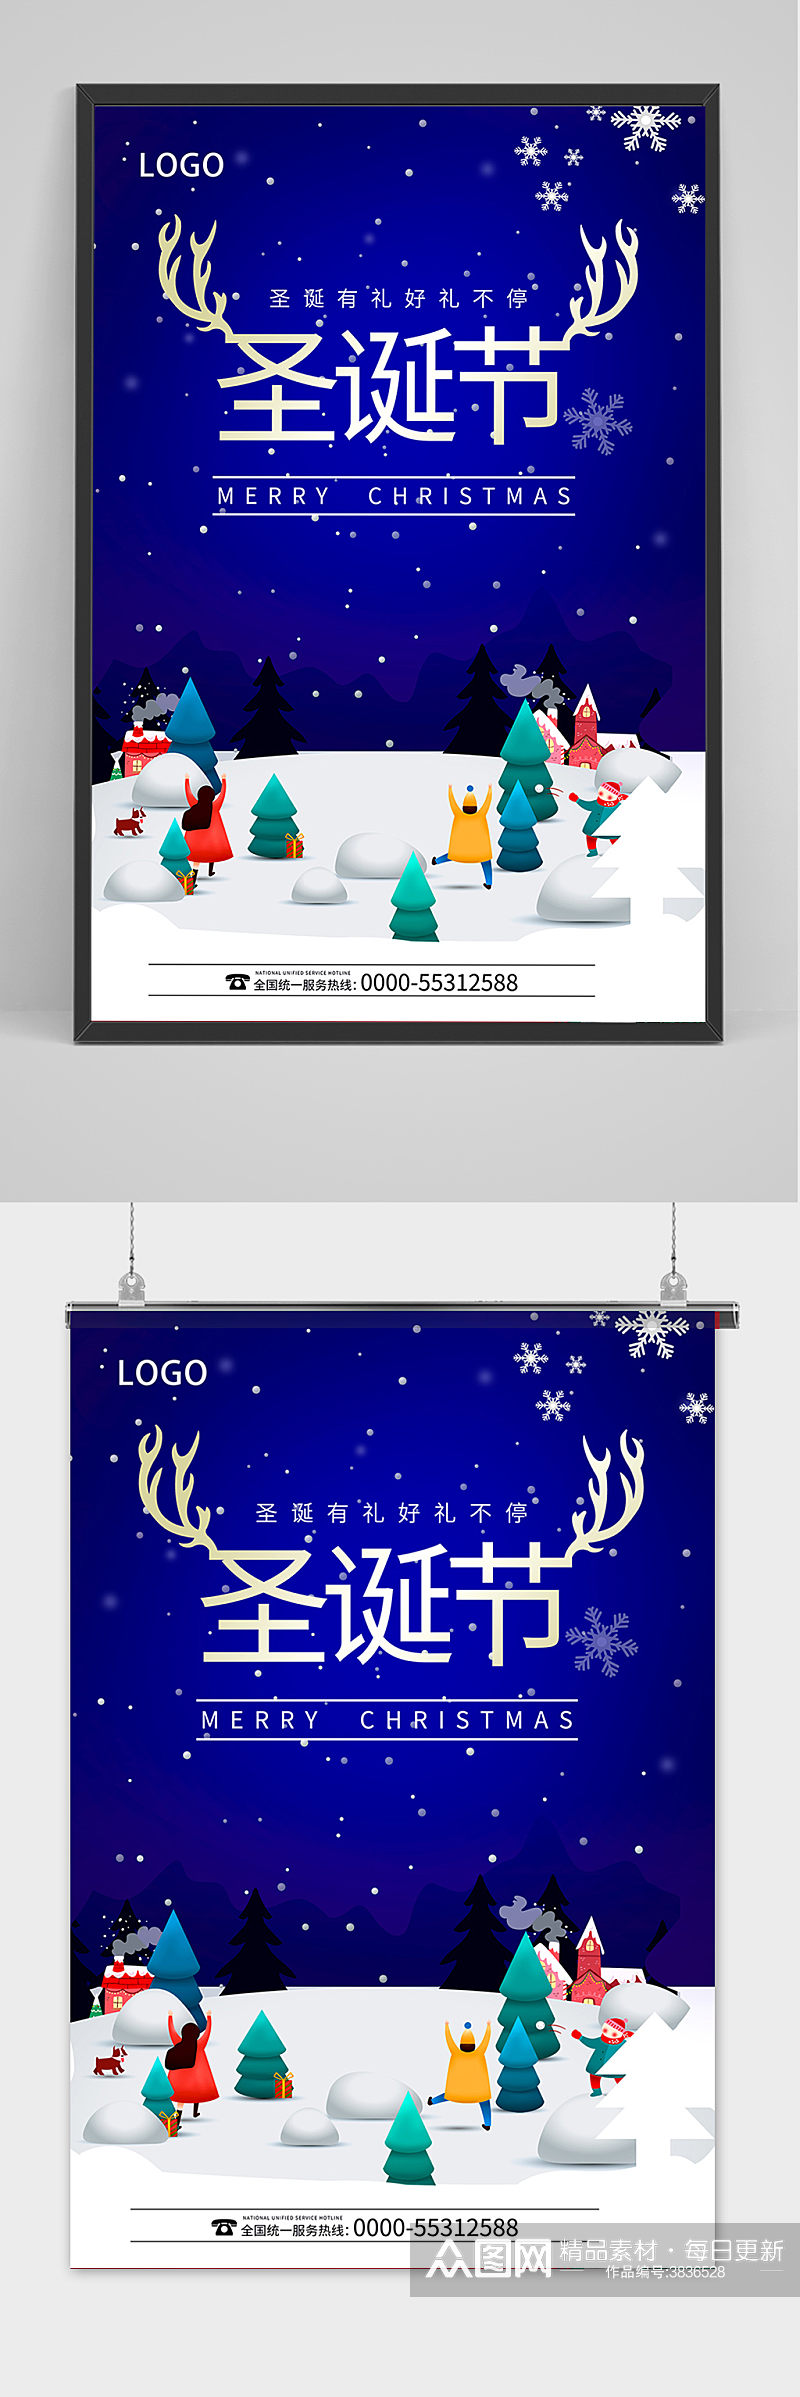 创意时尚天空蓝色背景圣诞节海报素材